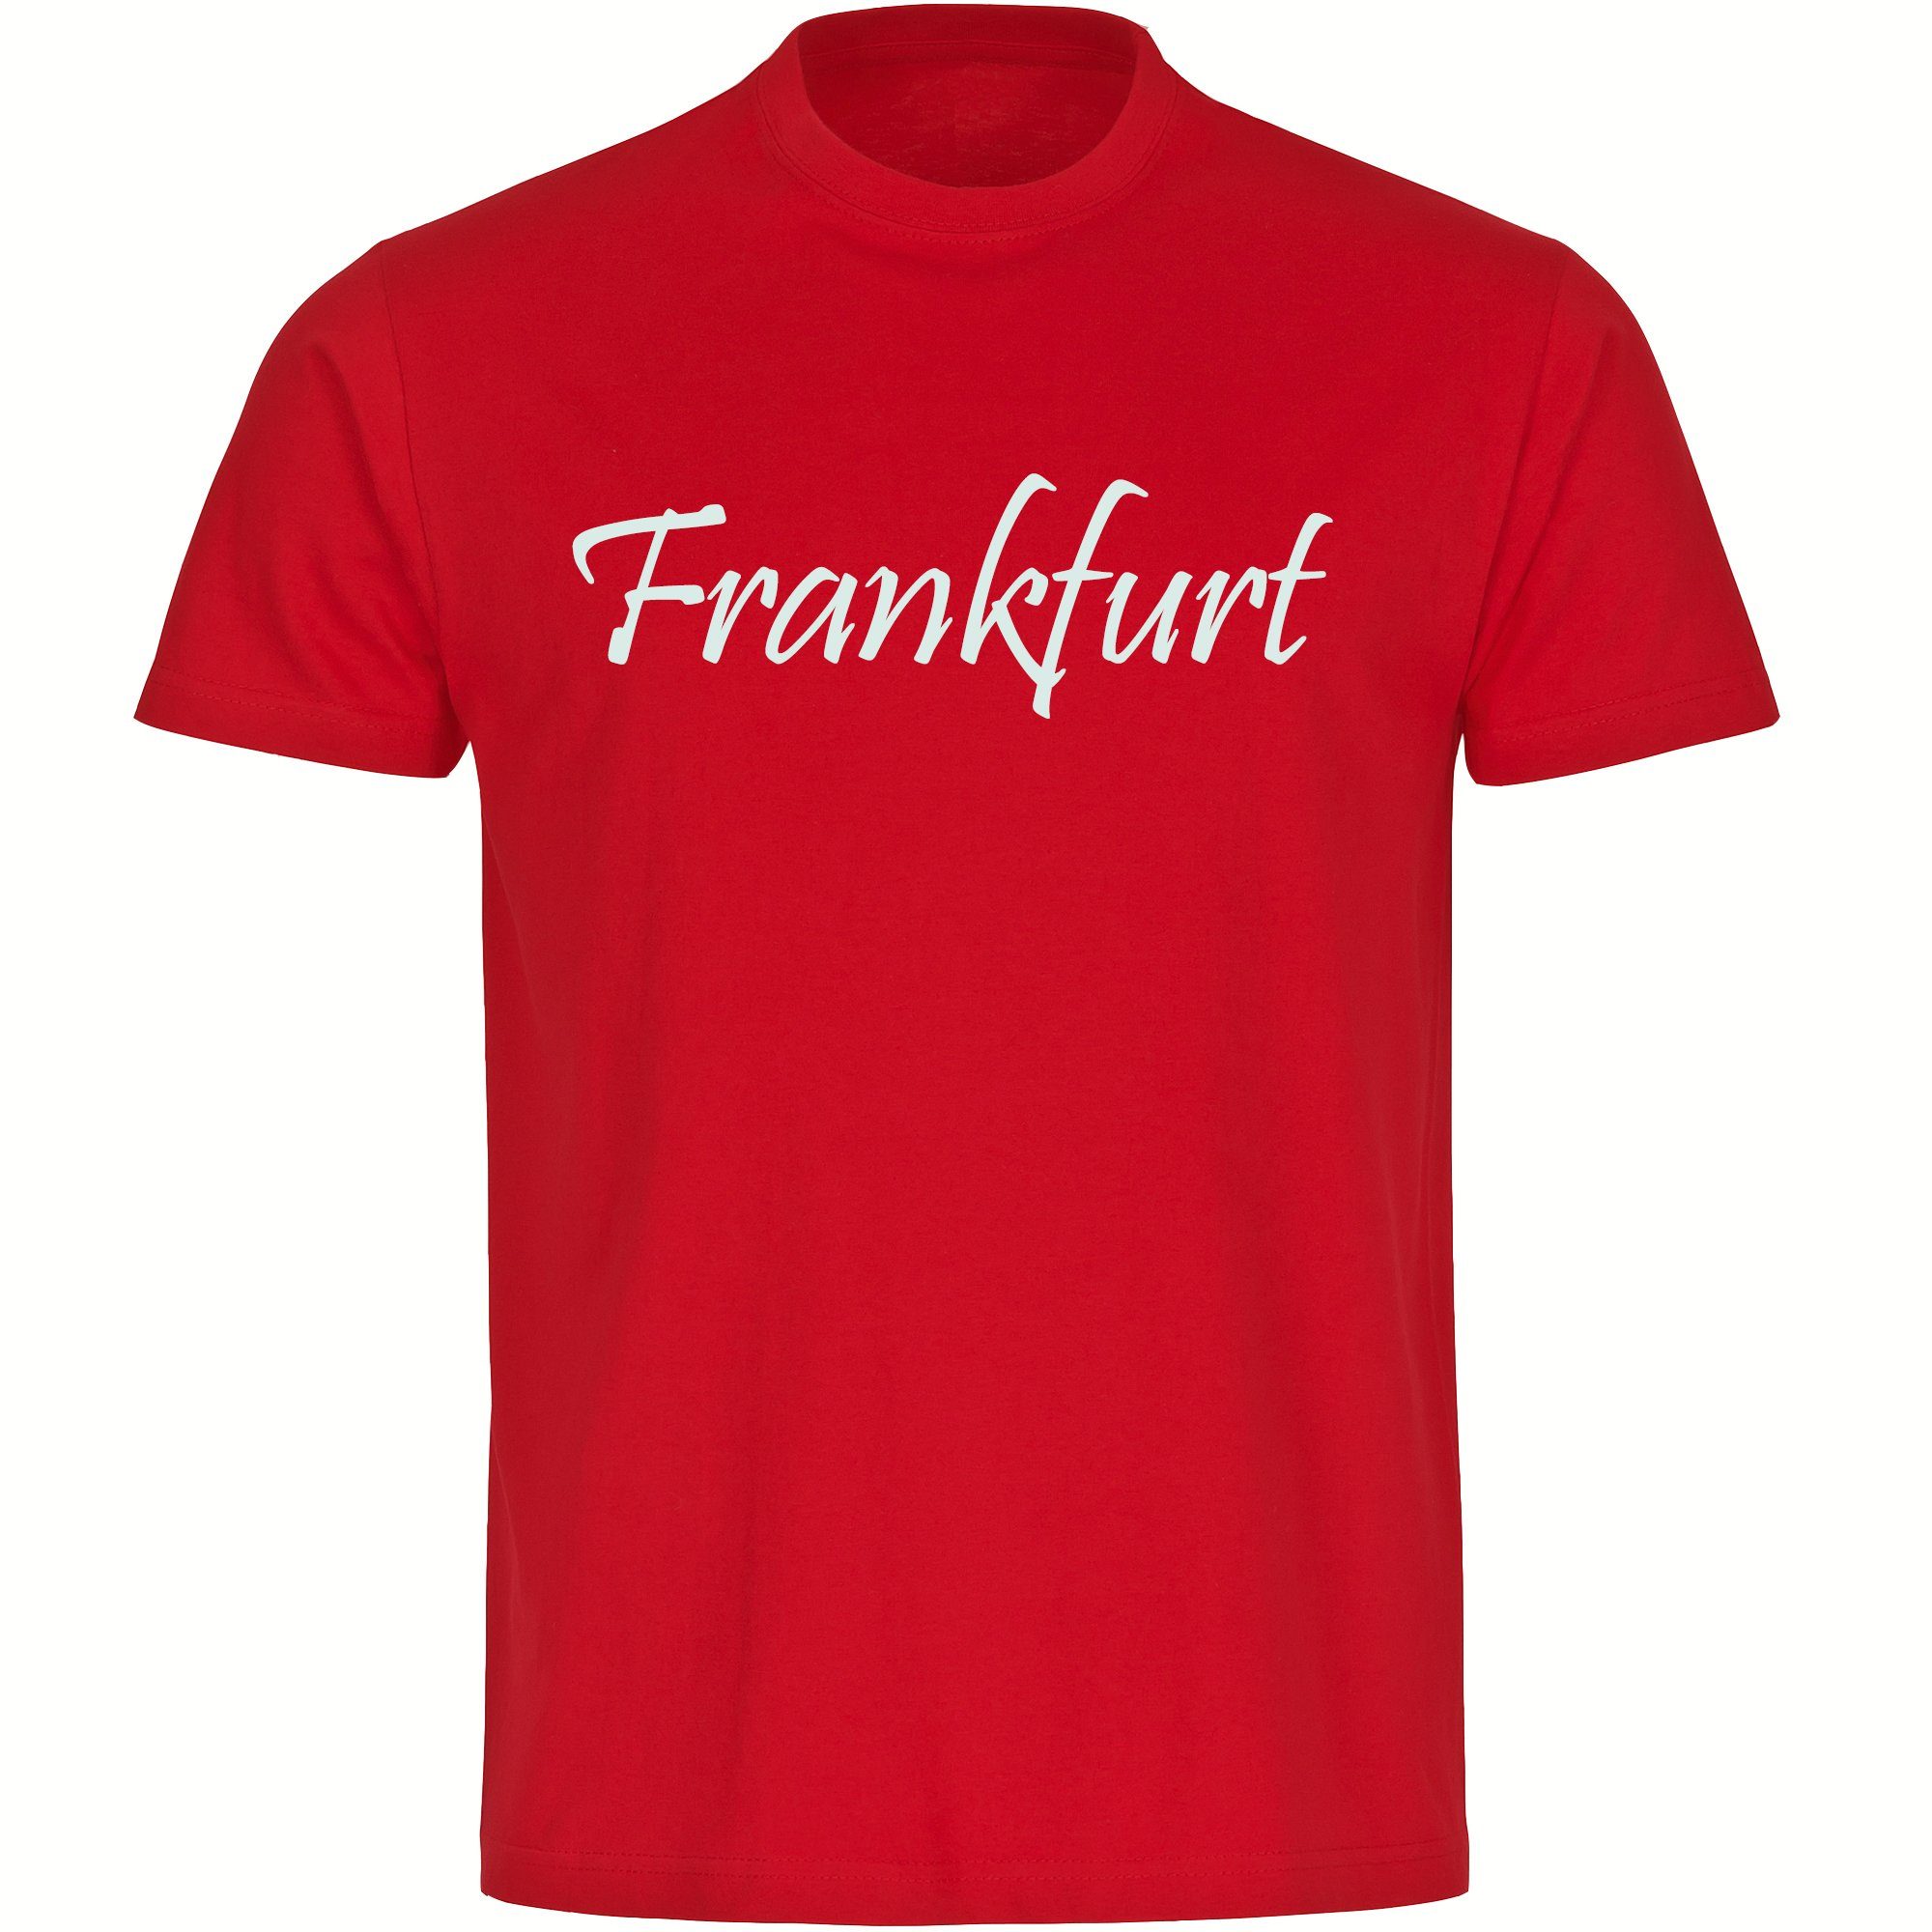 multifanshop T-Shirt Herren Frankfurt - Schriftzug - Männer